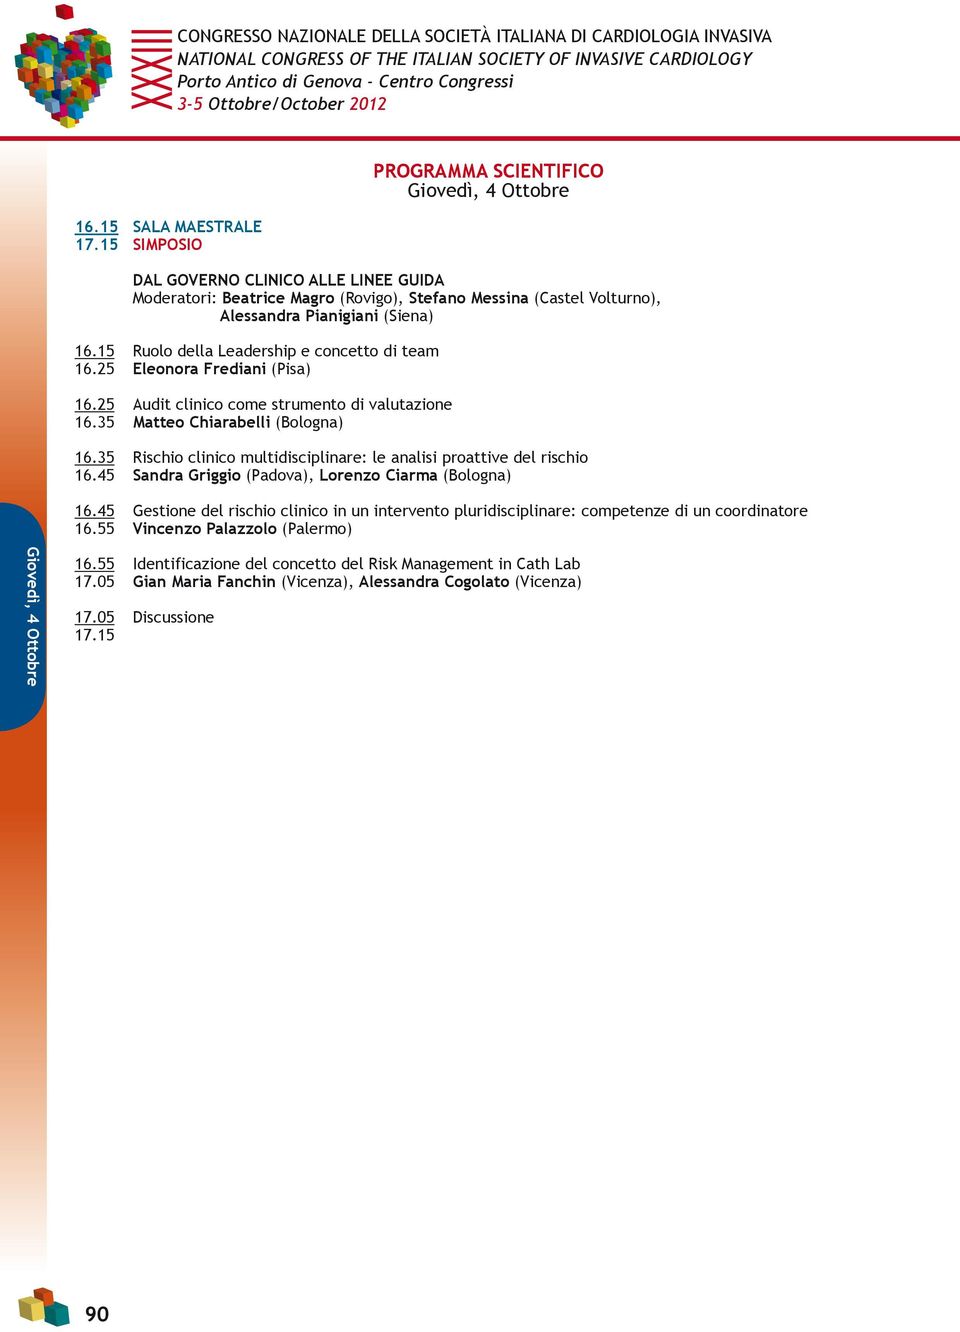 35 Rischio clinico multidisciplinare: le analisi proattive del rischio 16.45 Sandra Griggio (Padova), Lorenzo Ciarma (Bologna) 16.